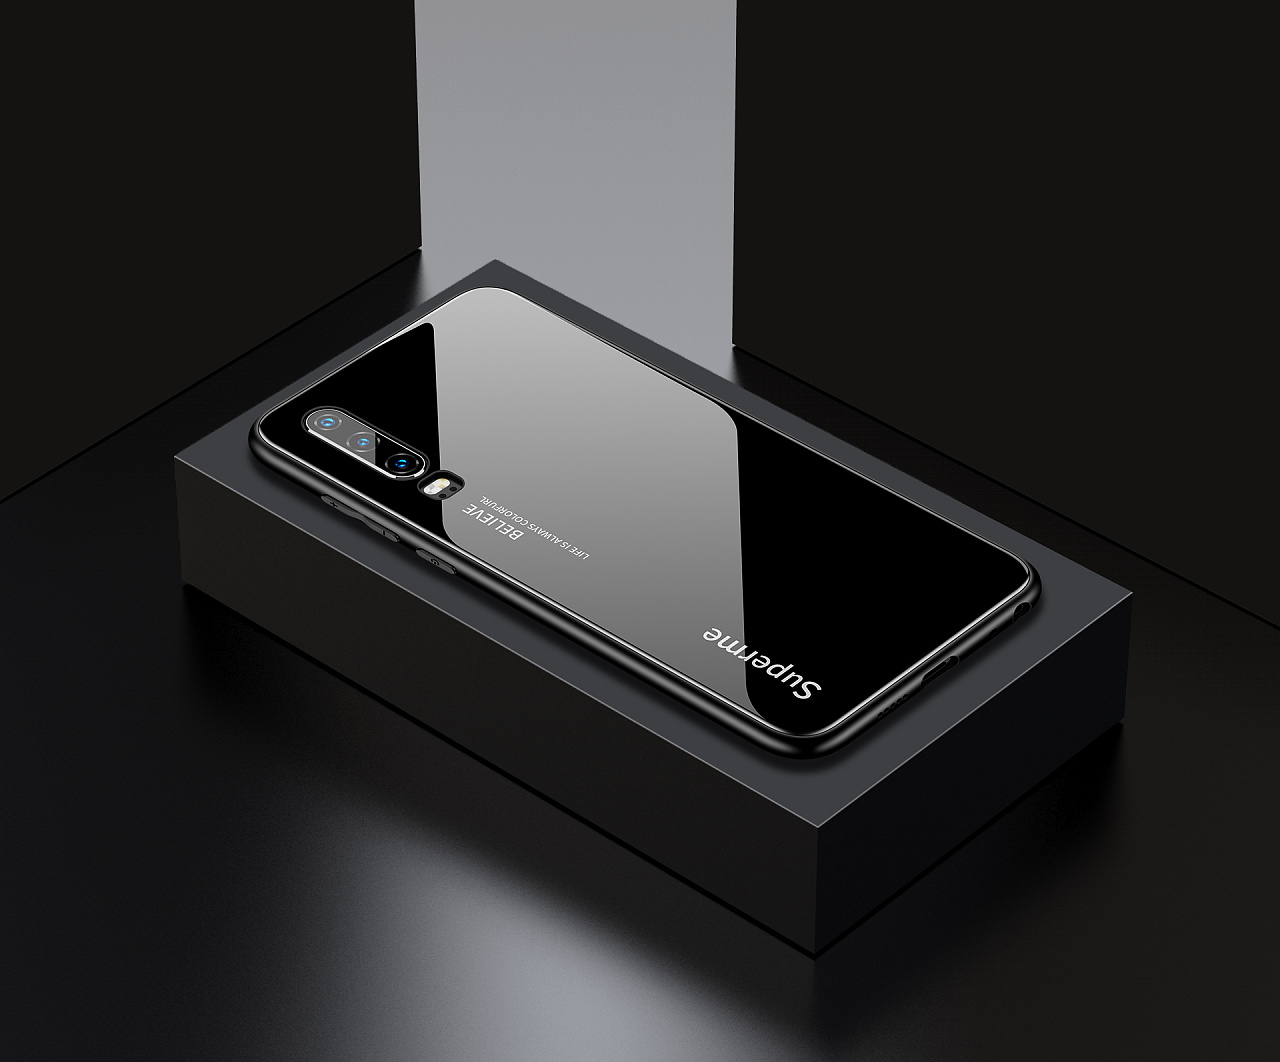 华为发布全球首款 5G 折叠屏手机 Mate X-格物者-工业设计源创意资讯平台_官网